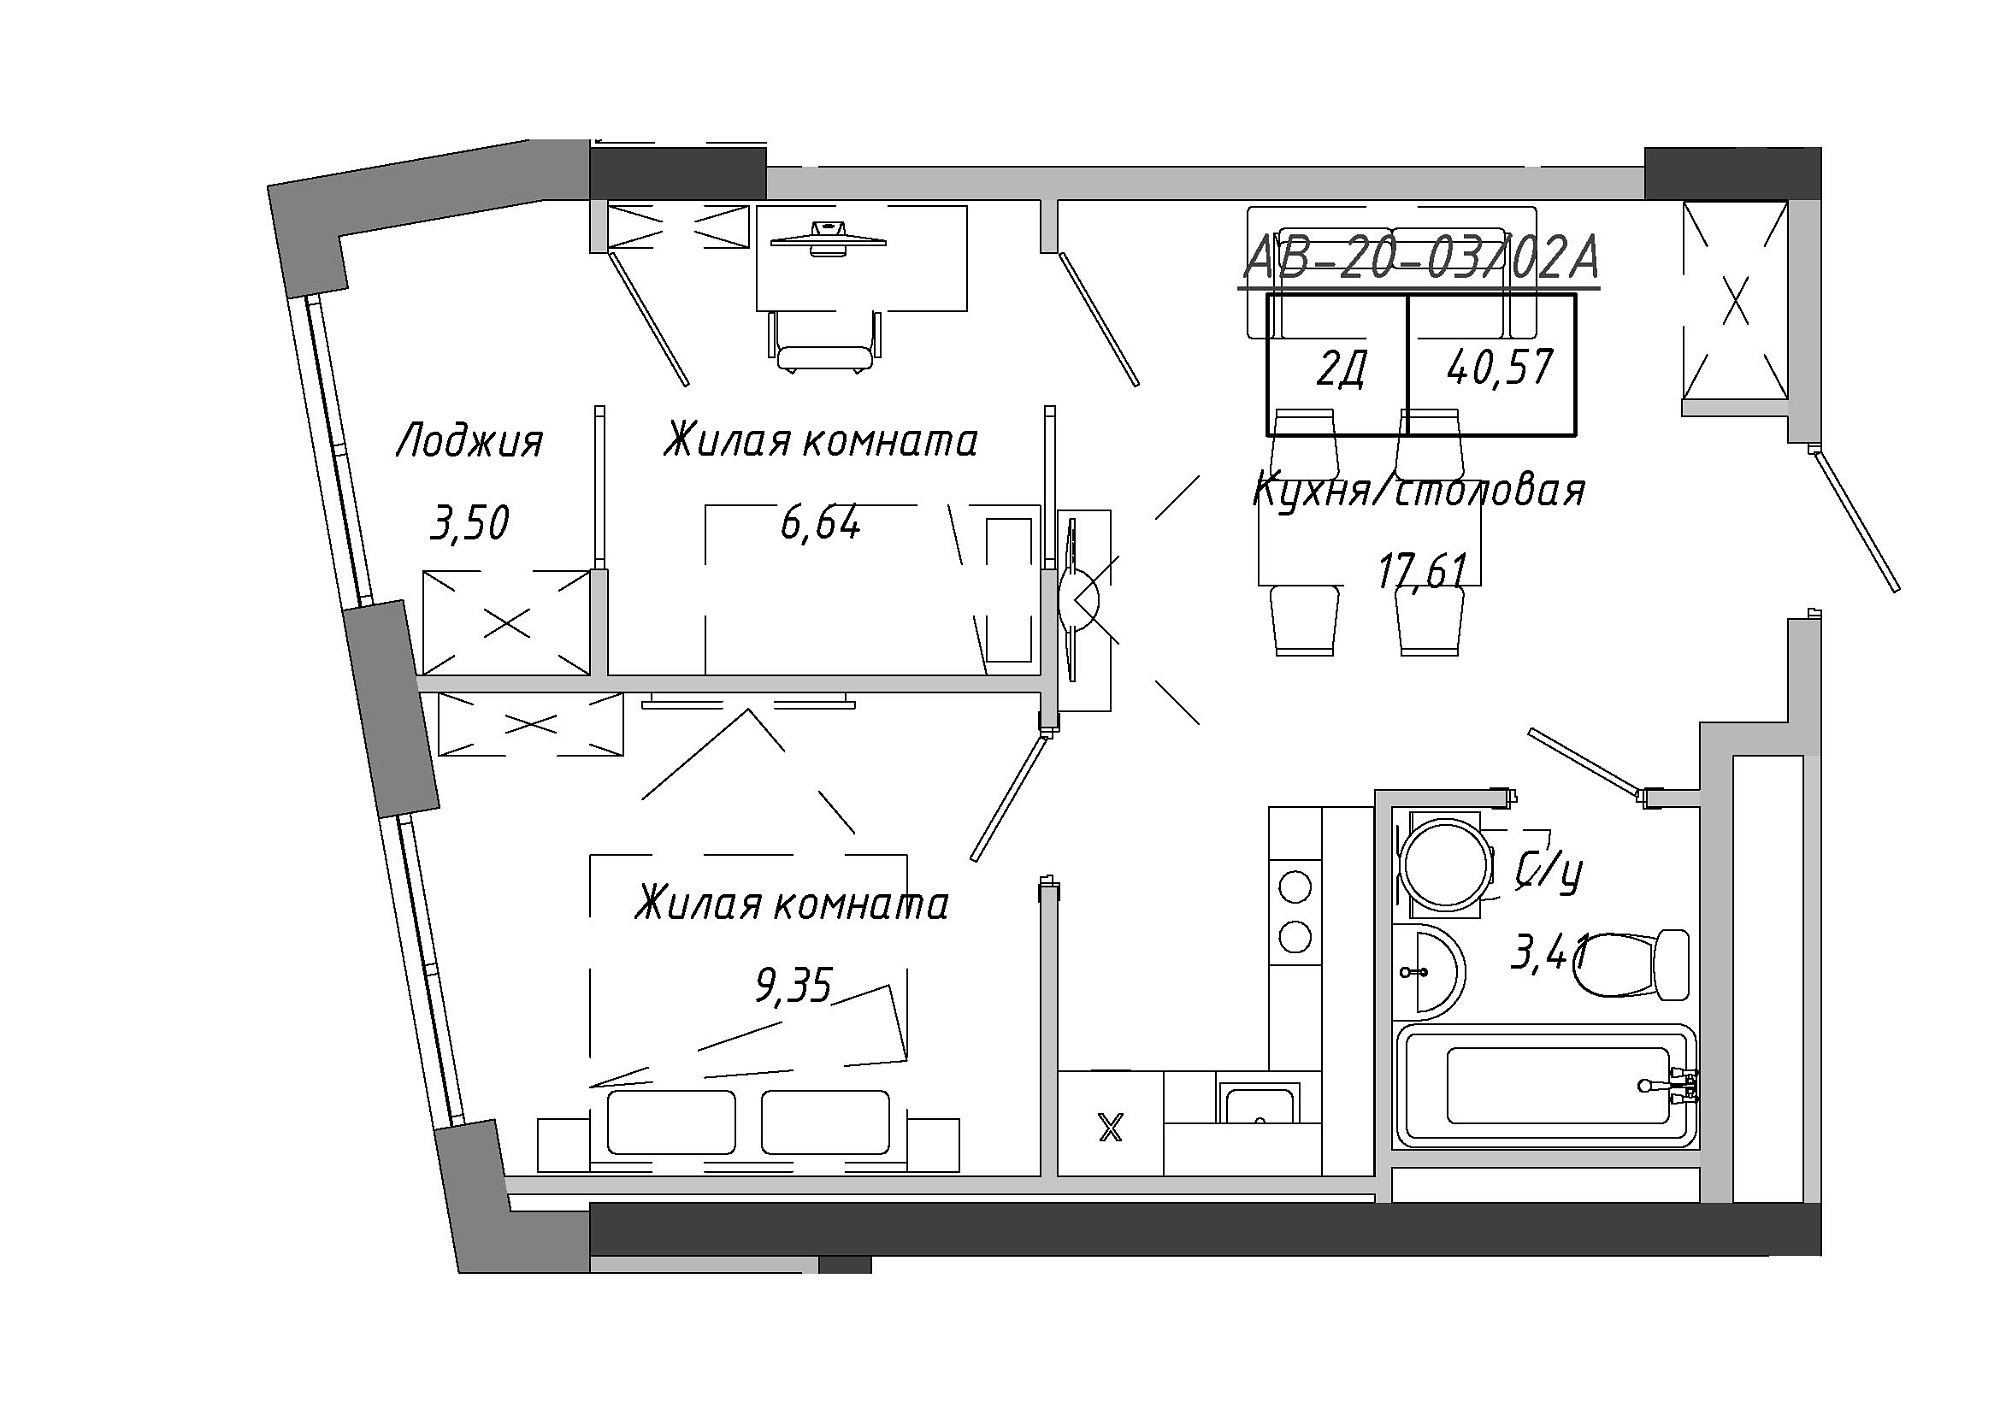 Планування 2-к квартира площею 40.57м2, AB-20-03/0002а.